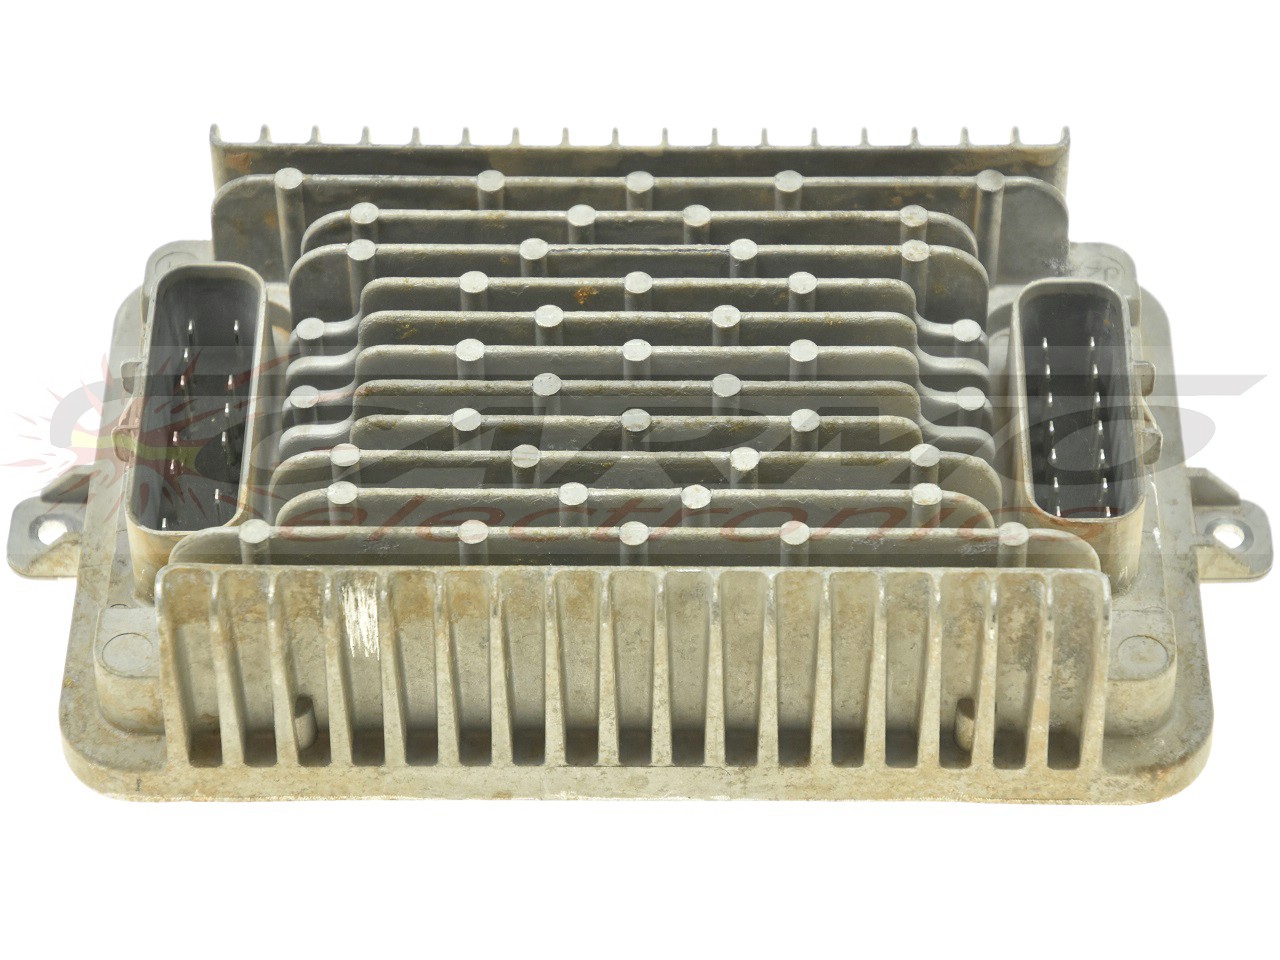 Polaris Ranger 500 (Sure power, P4011089, 4011089, 4011089MODULE500) encendedor módulo de encendido CDI TCI Box